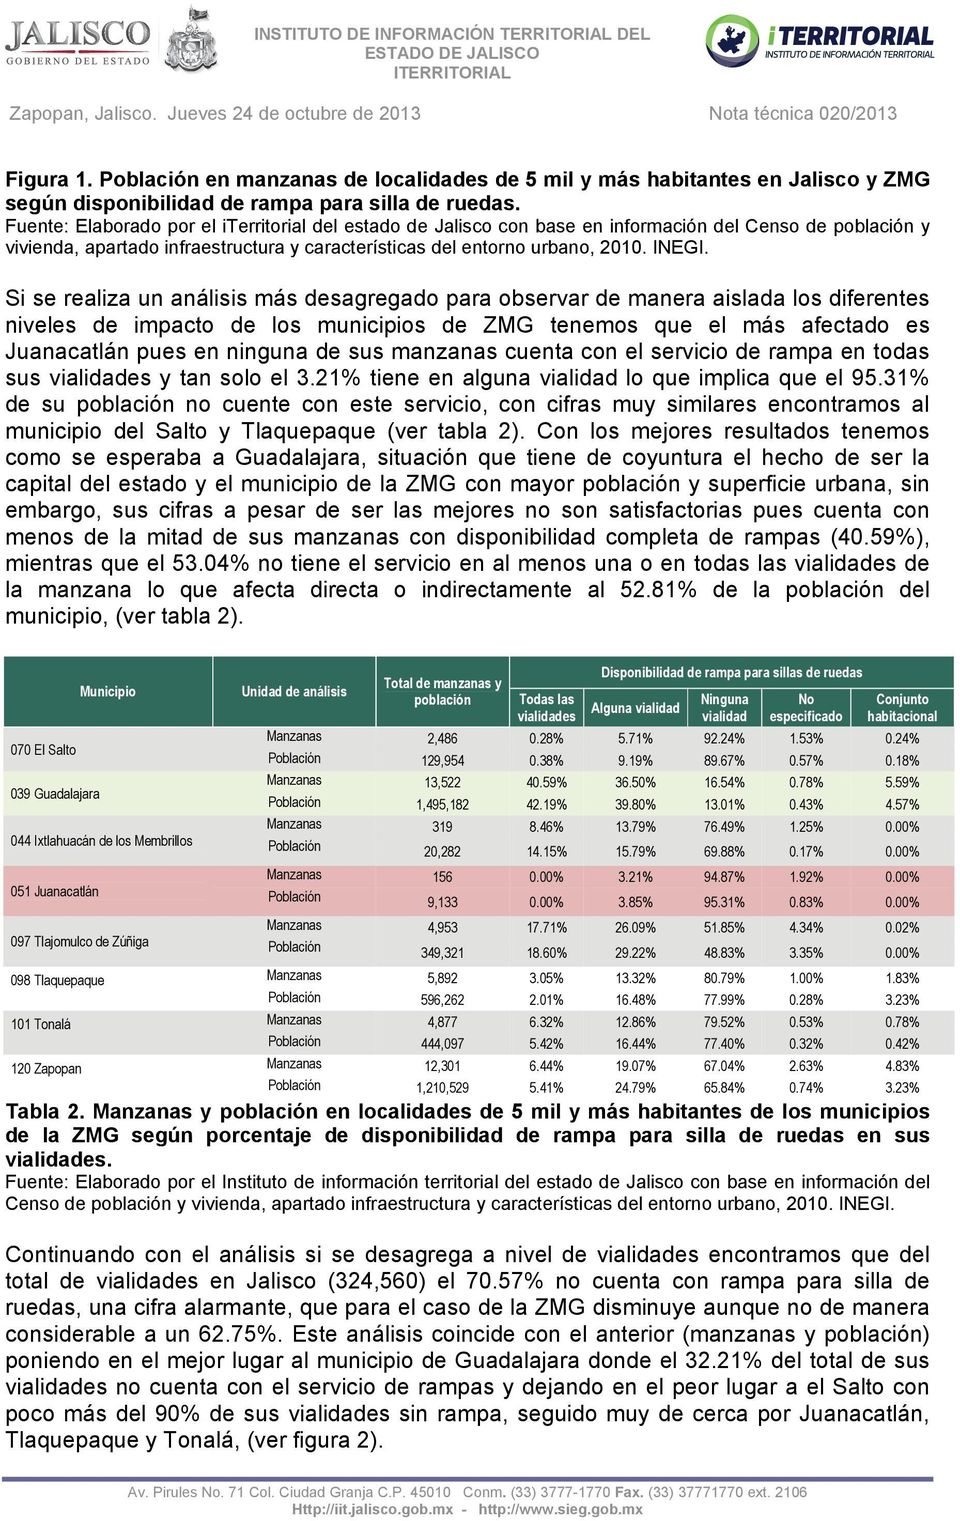 Si se realiza un análisis más desagregado para observar de manera aislada los diferentes niveles de impacto de los municipios de ZMG tenemos que el más afectado es Juanacatlán pues en ninguna de sus